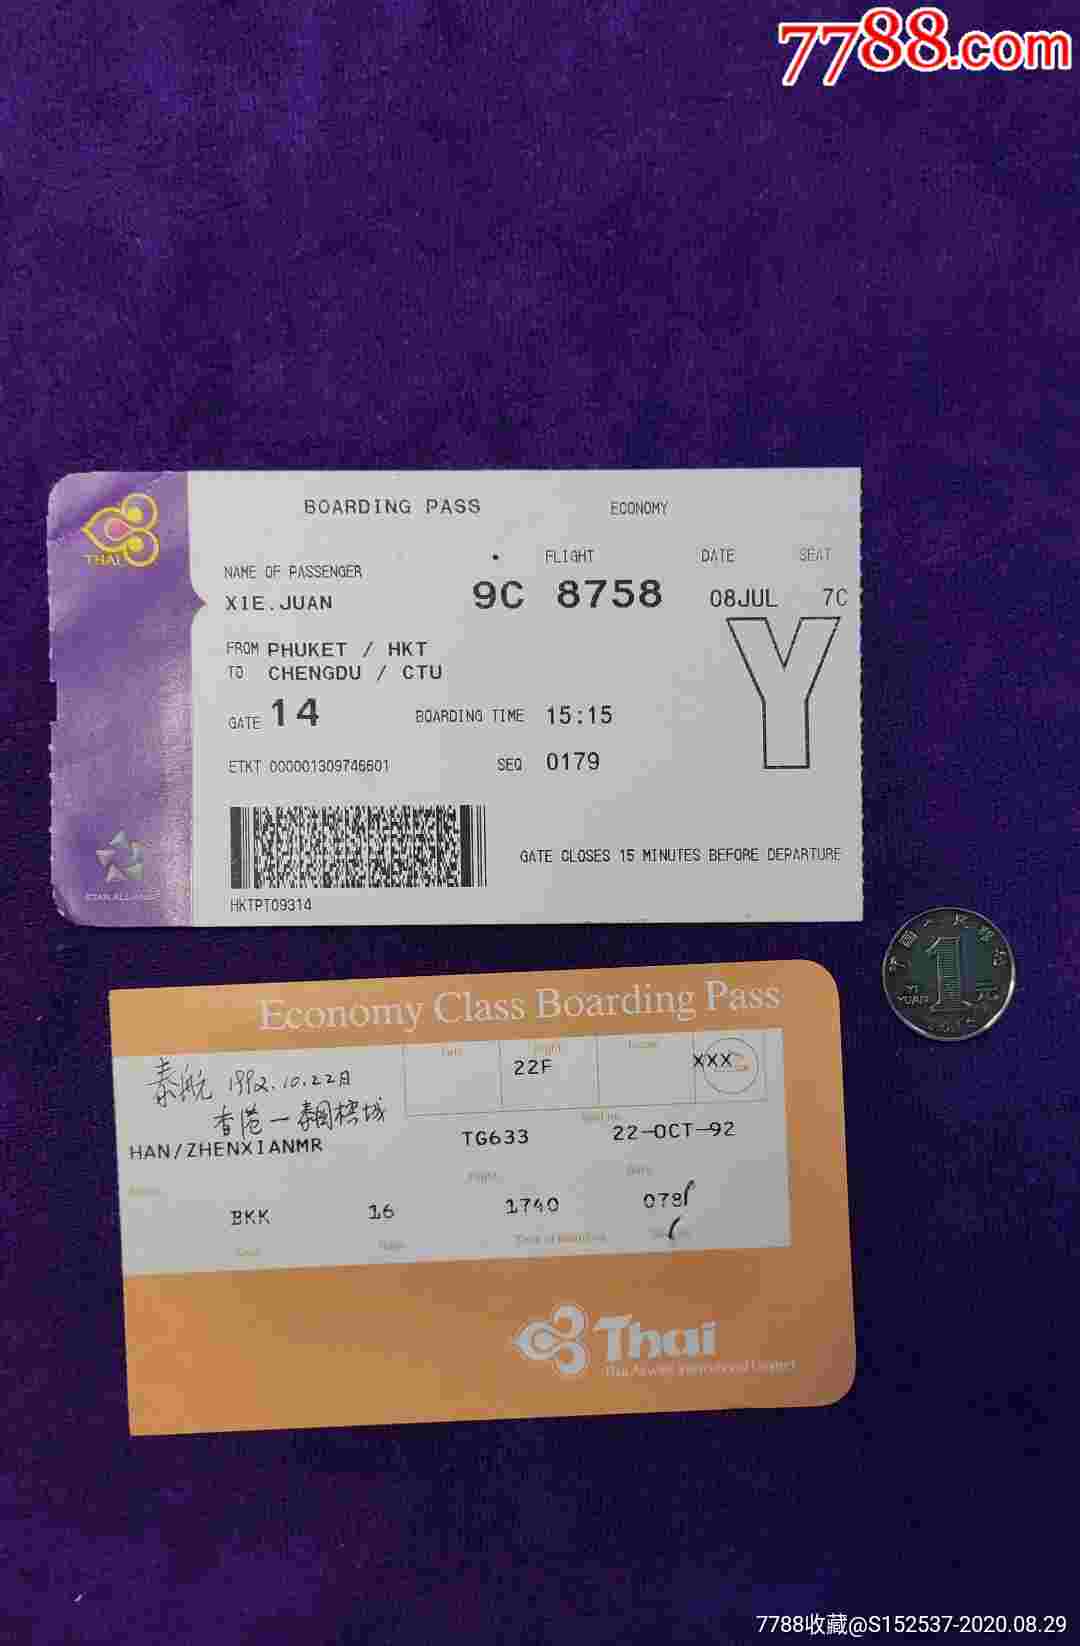 「曼谷旅游机票」✅ 曼谷旅游机票价格